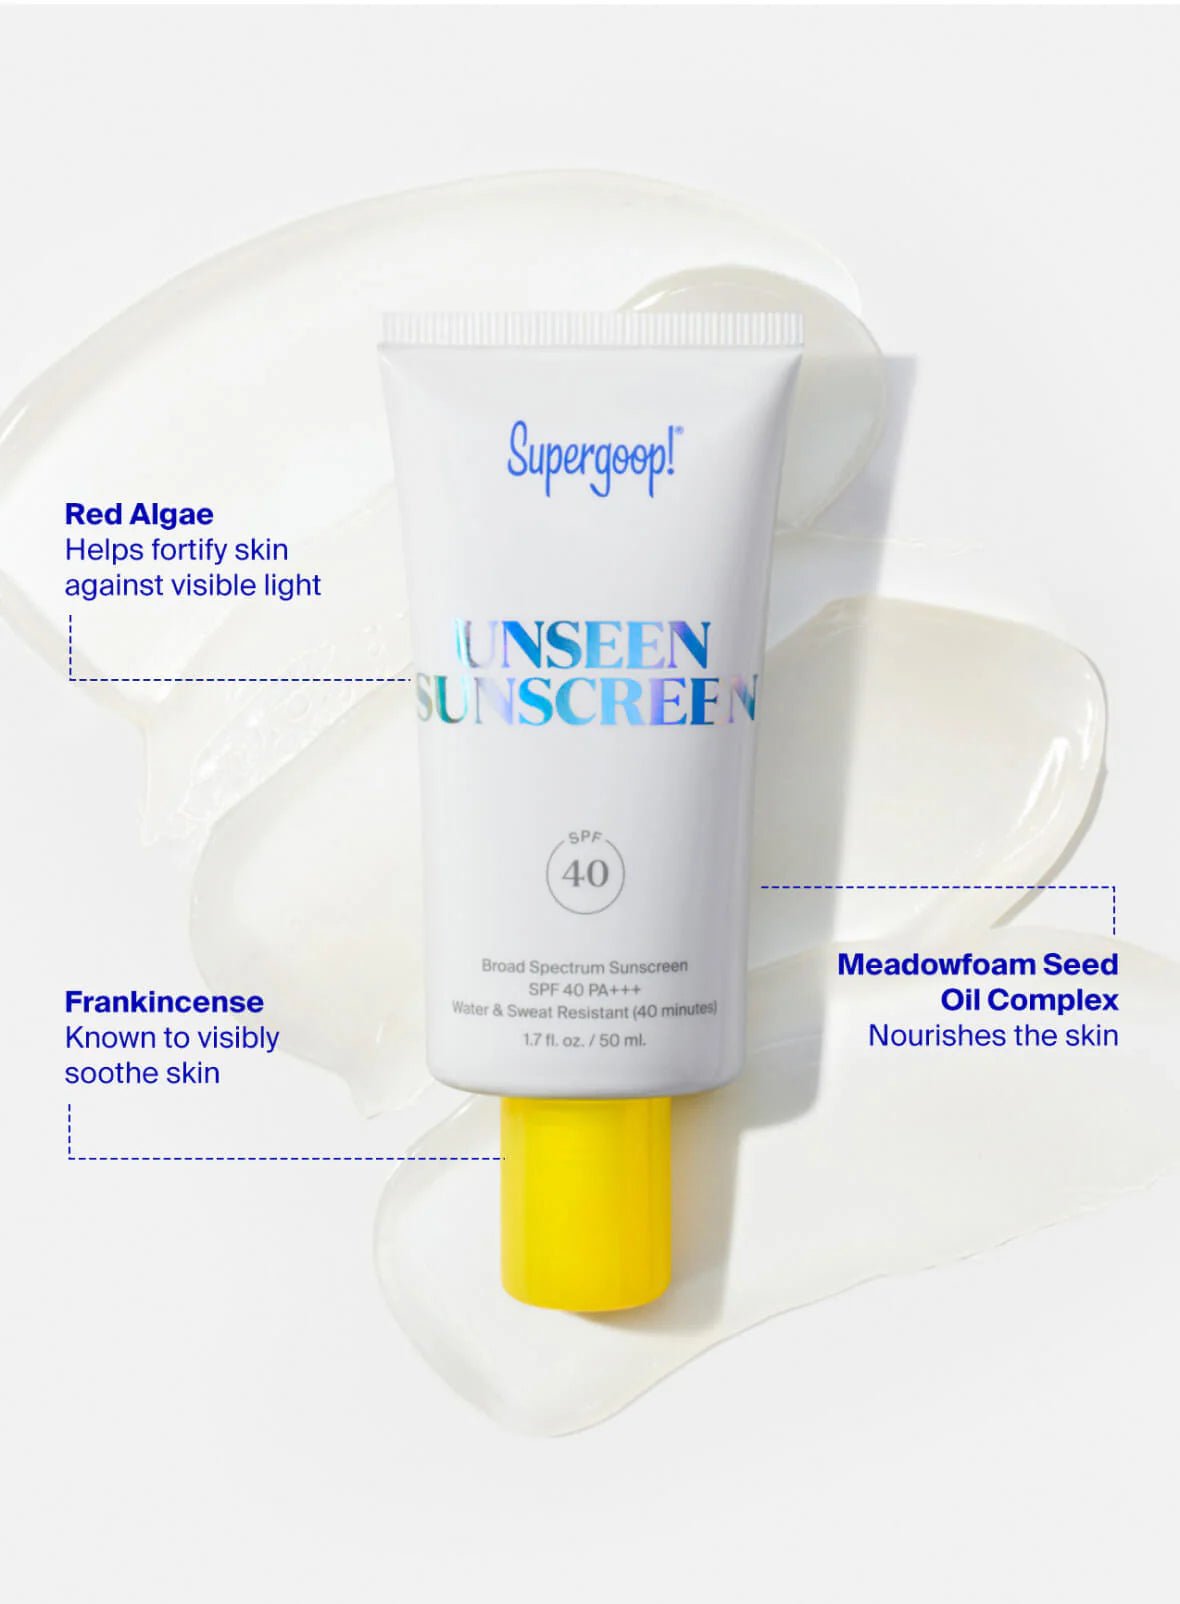 Supergoop! Unseen Sunscreen SPF 40 - 30A Gear - novelty misc